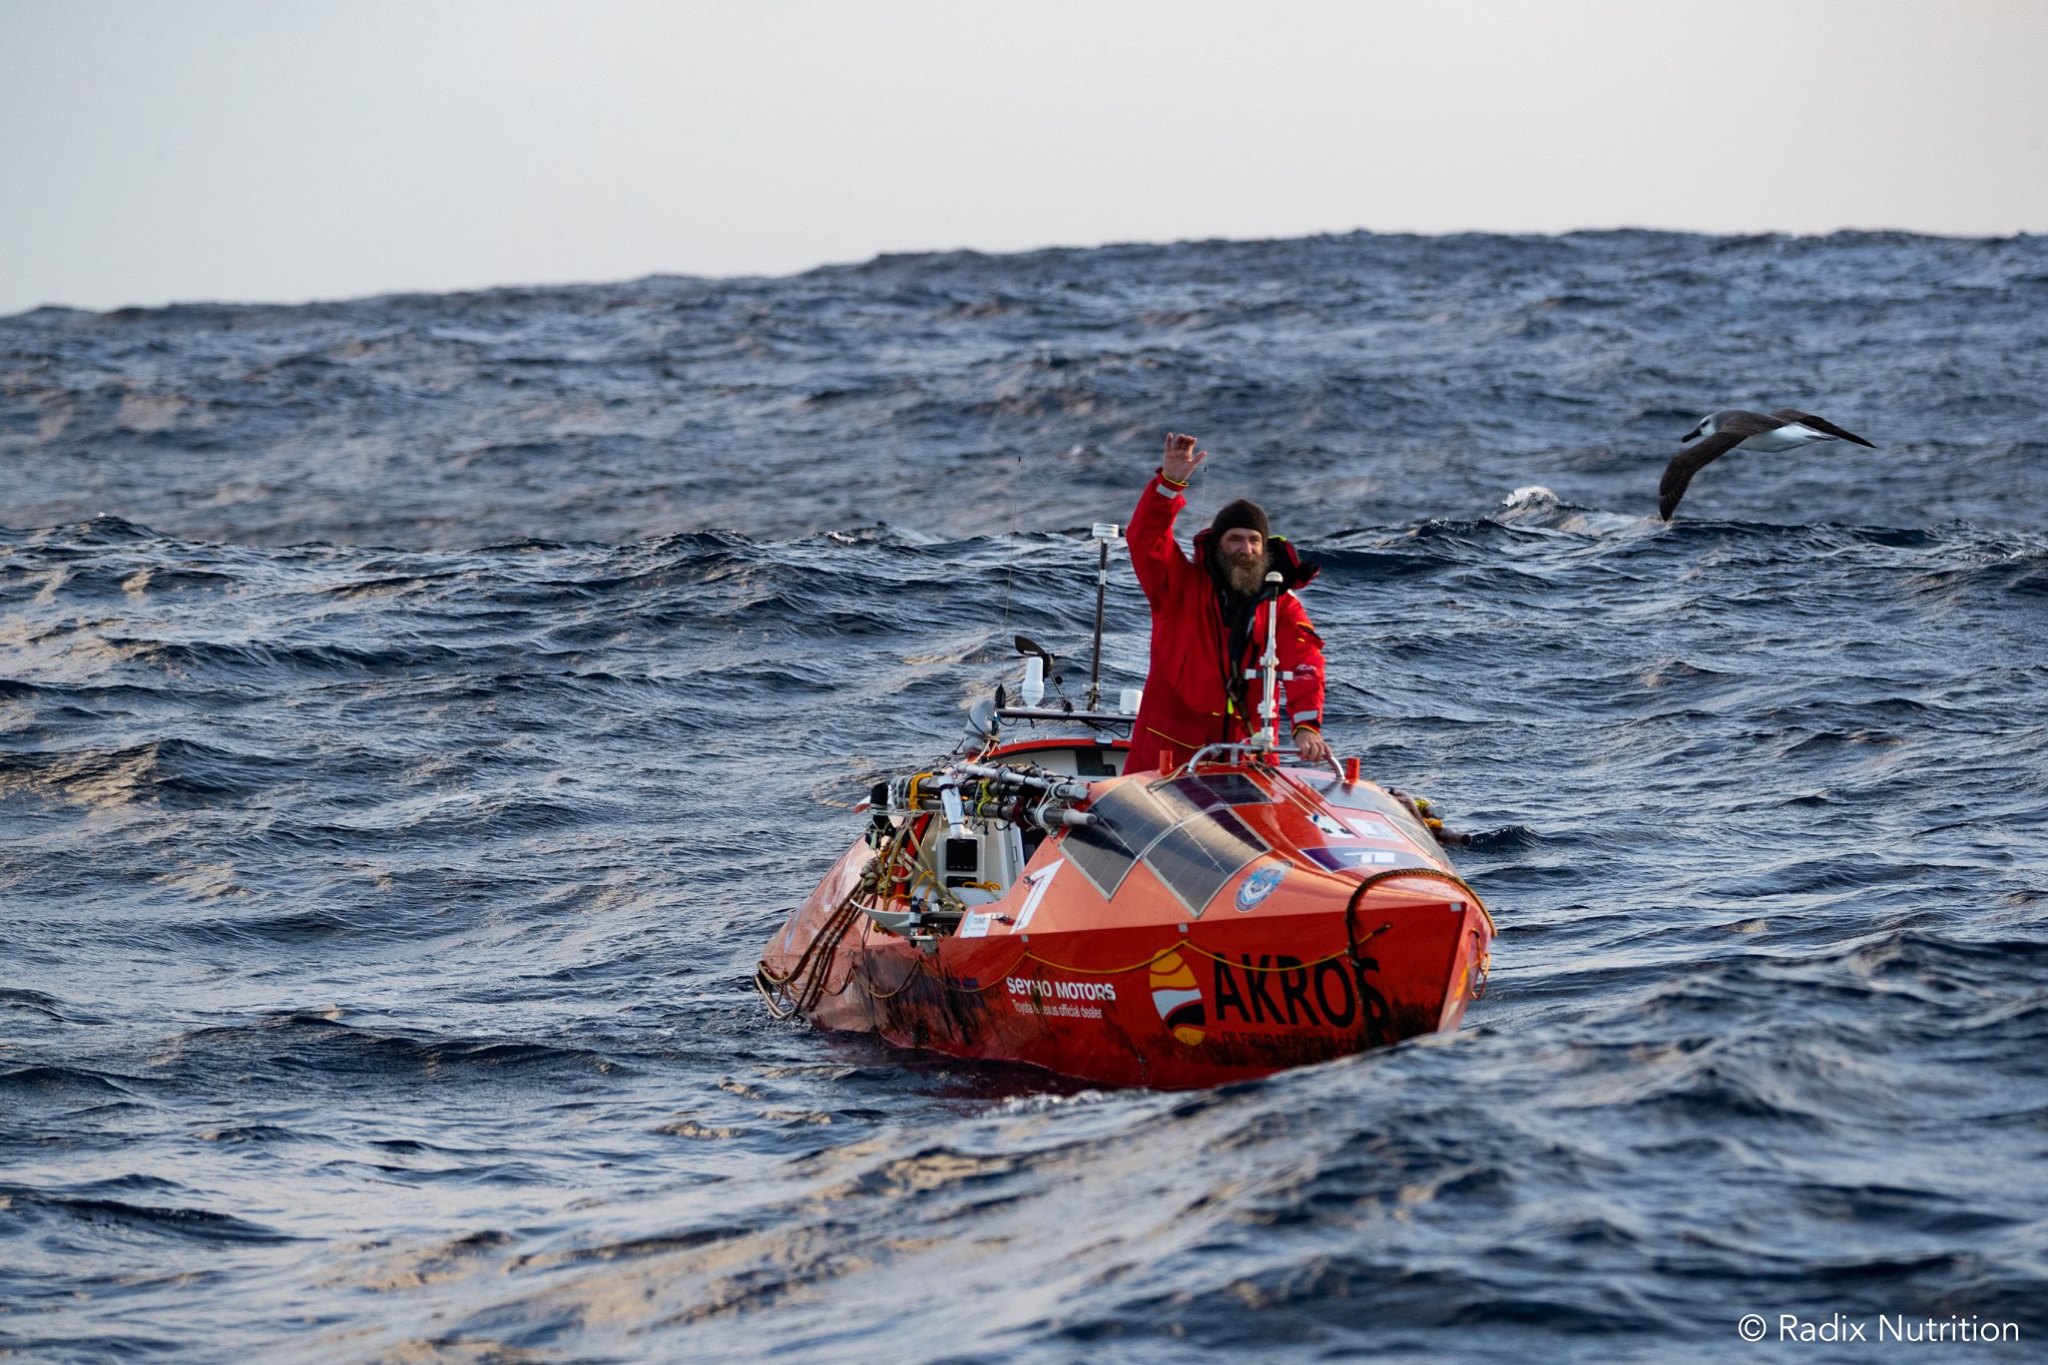 Видео о переходе Фёдора Конюхова через Южный океан на вёсельной лодке "АКРОС"